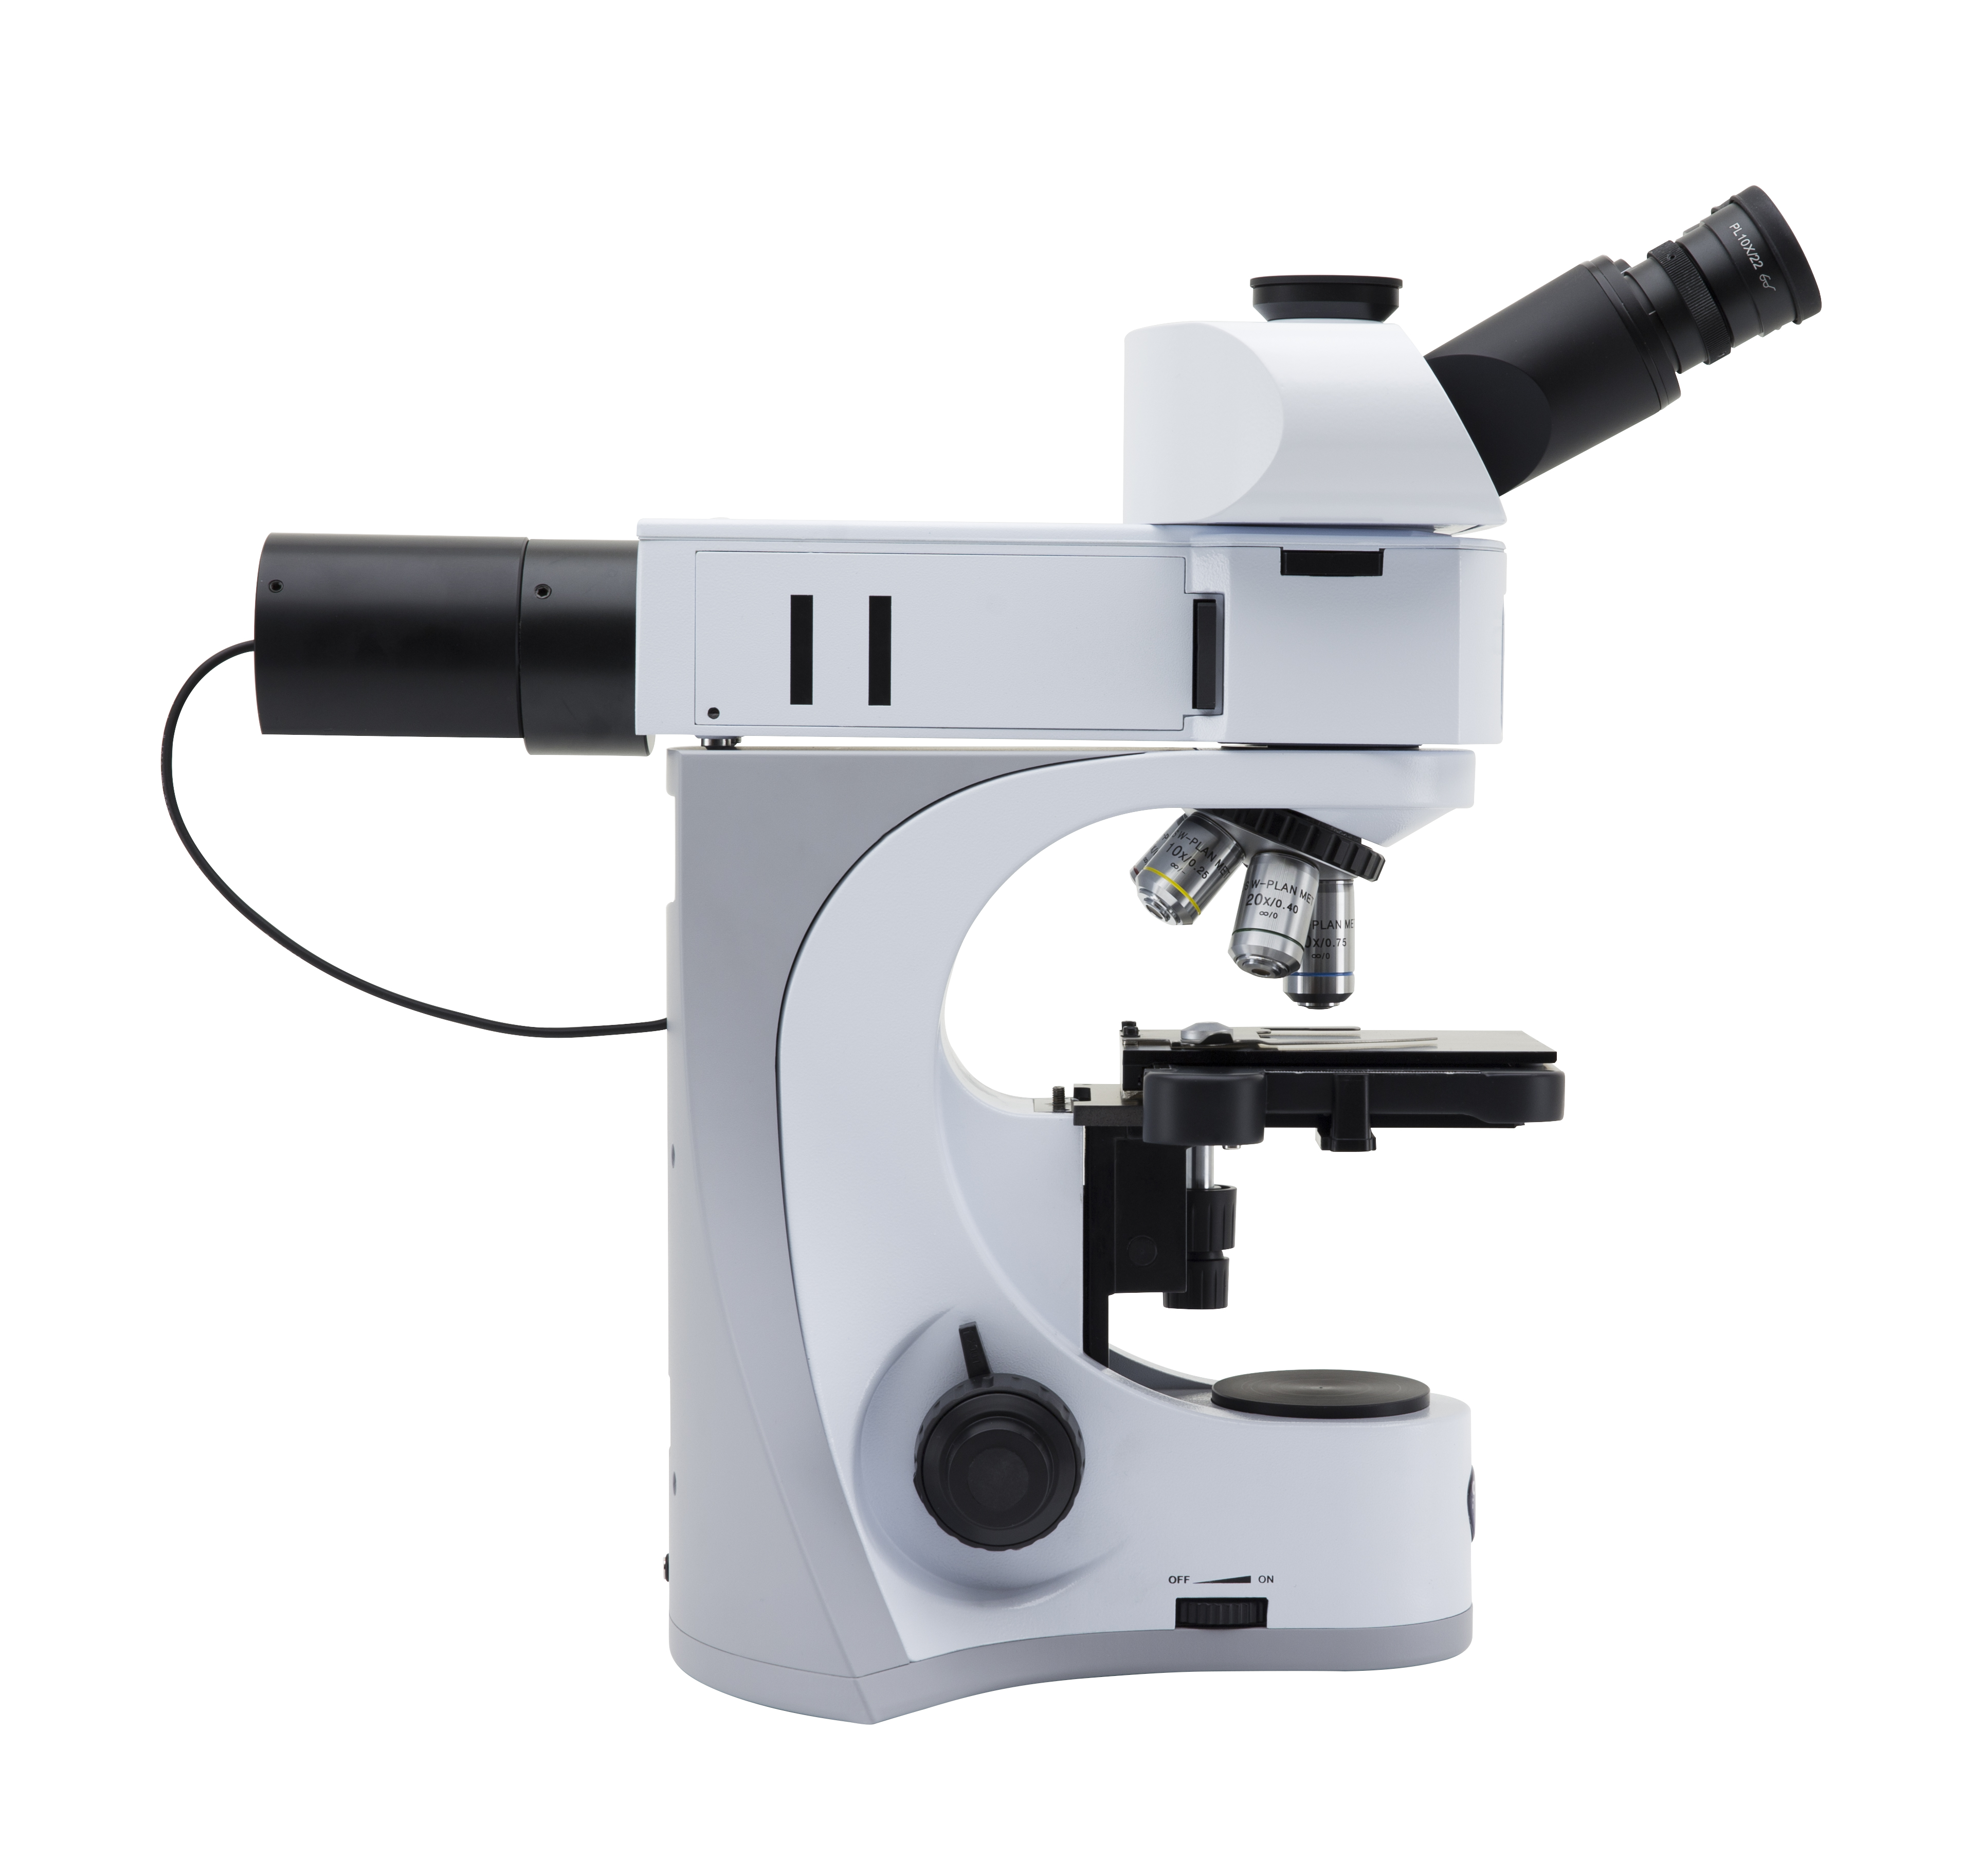 กล้องจุลทรรศน์แบบแสงตกกระทบสำหรับงานวัสดุและโลหะวิทยา (Metallurgical Upright Microscope) ยี่ห้อ OPTIKA รุ่น B-510MET